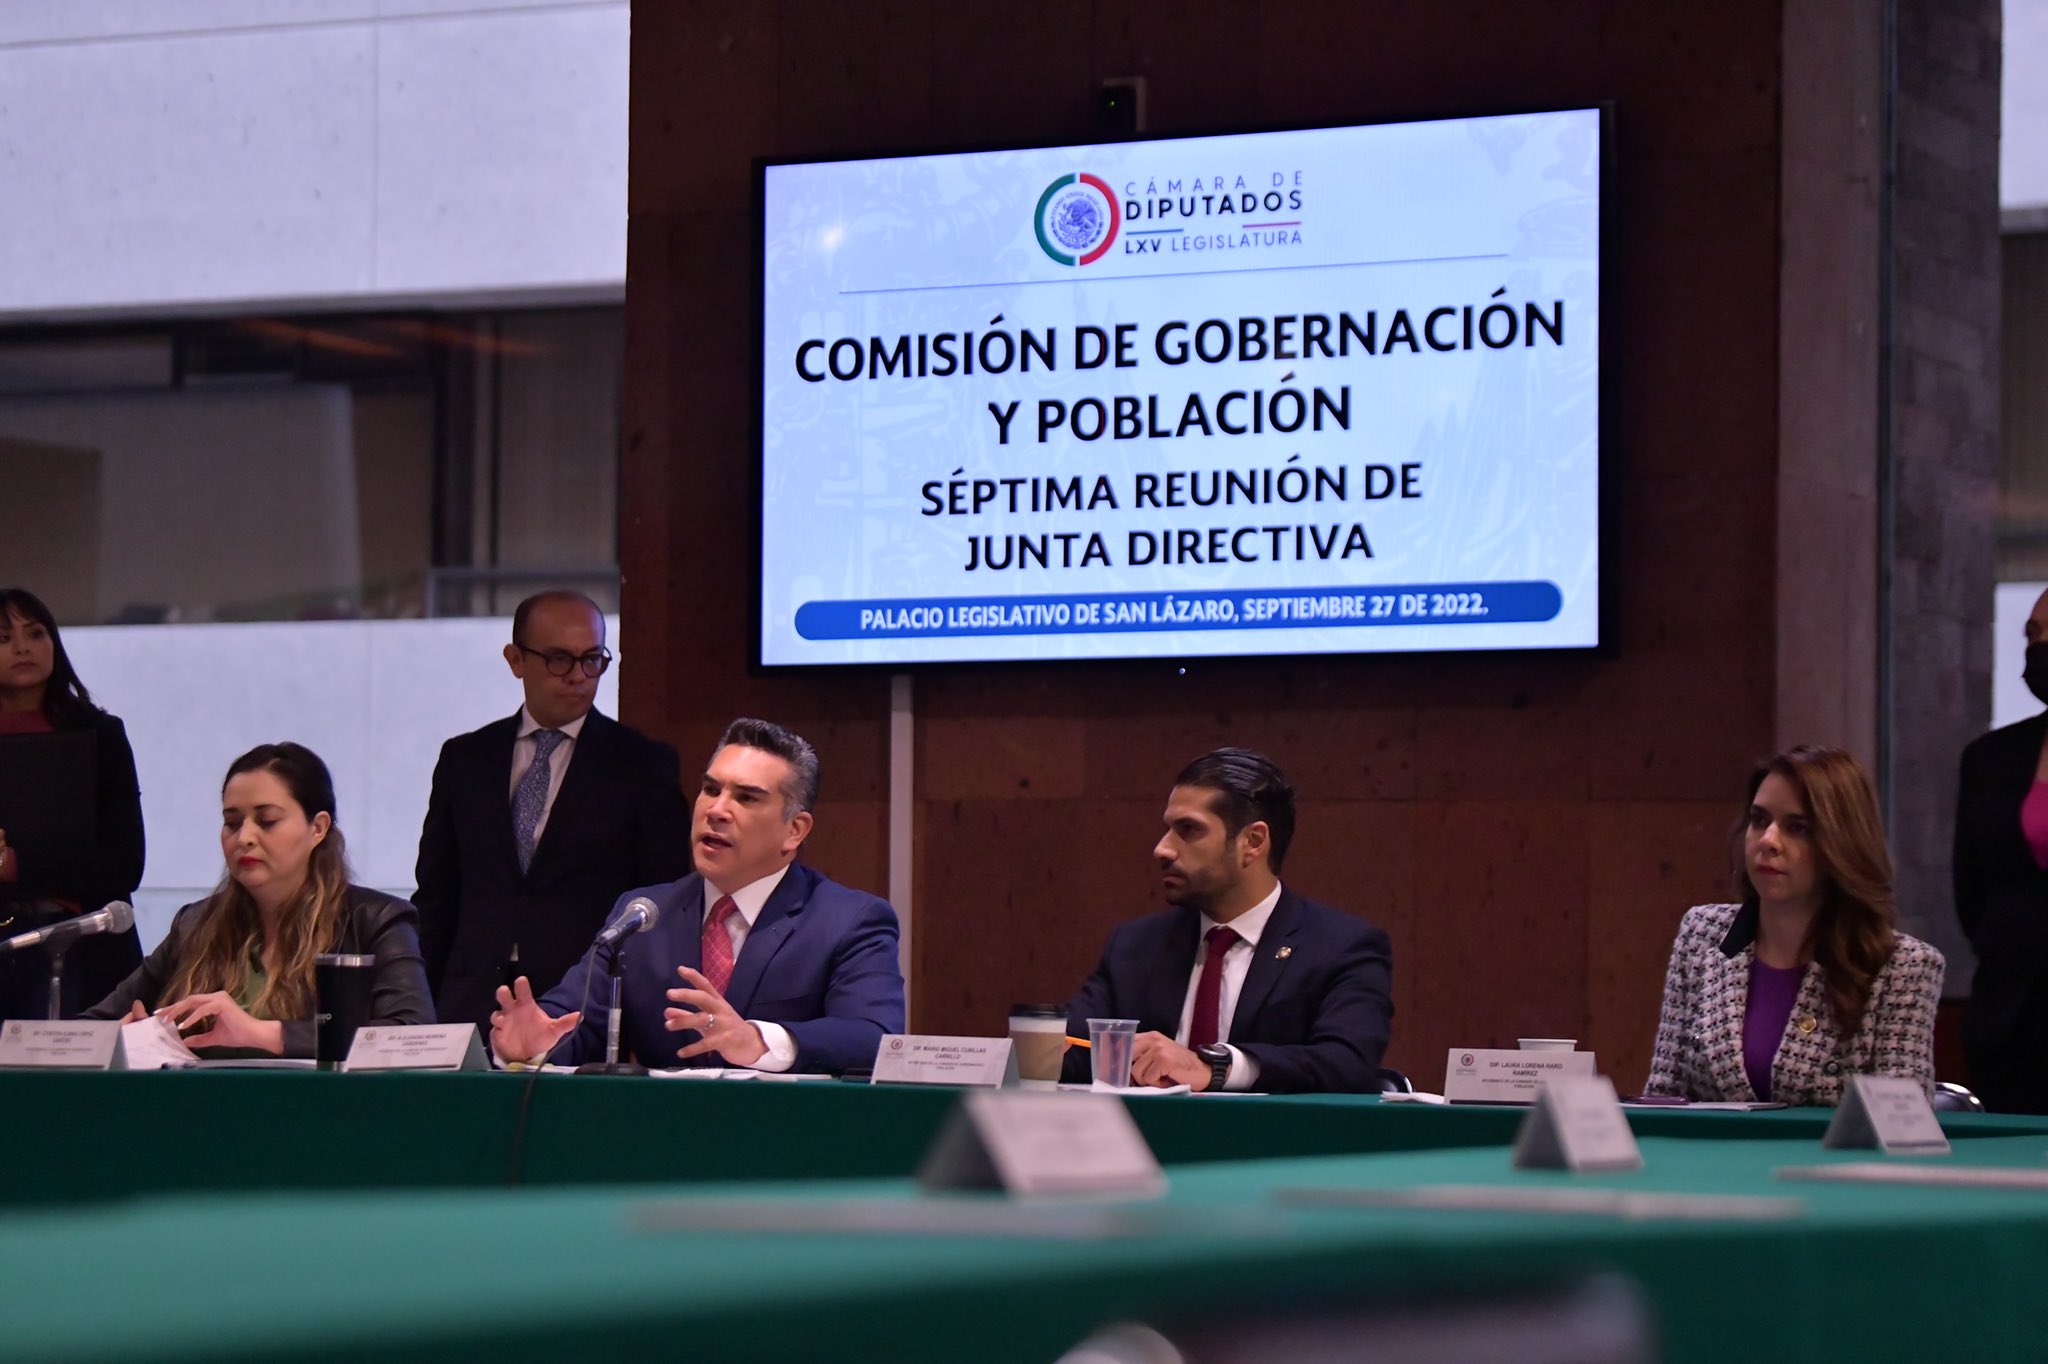 La Comisión de Gobernación, presidida por "Alito" Moreno avaló la propuesta (Twitter/@alitomorenoc)